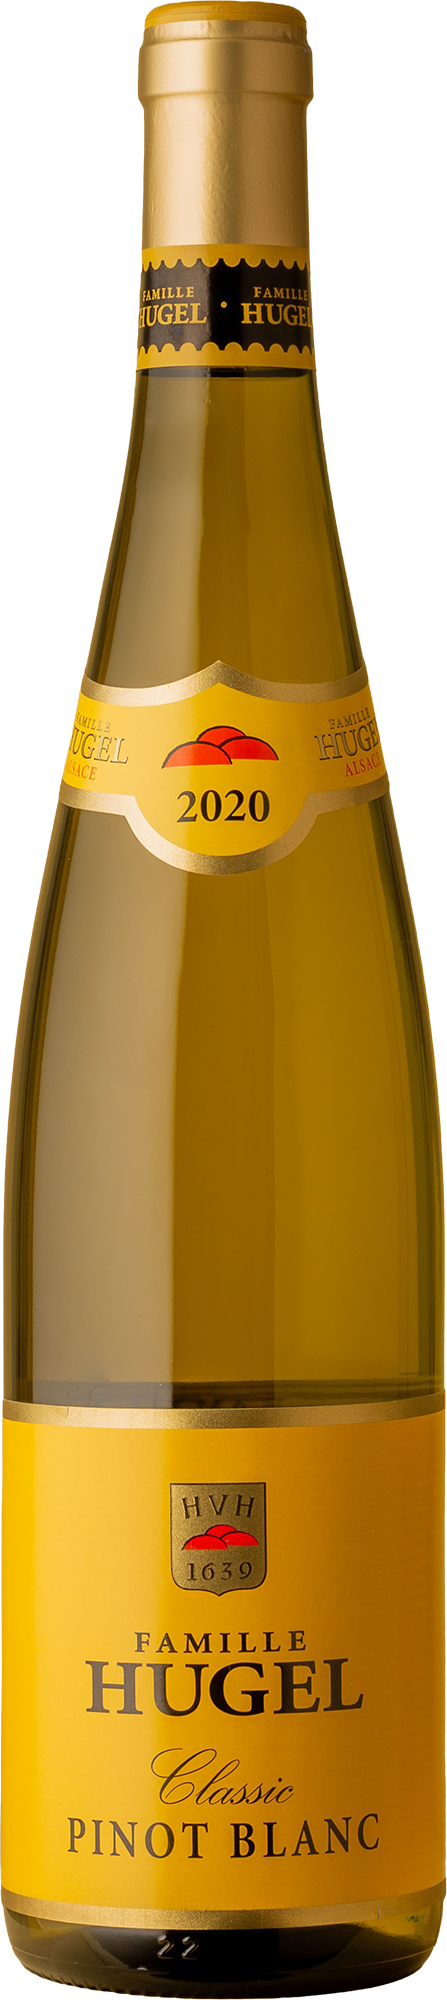 Hugel - Classic Pinot Blanc 2020 White Wine